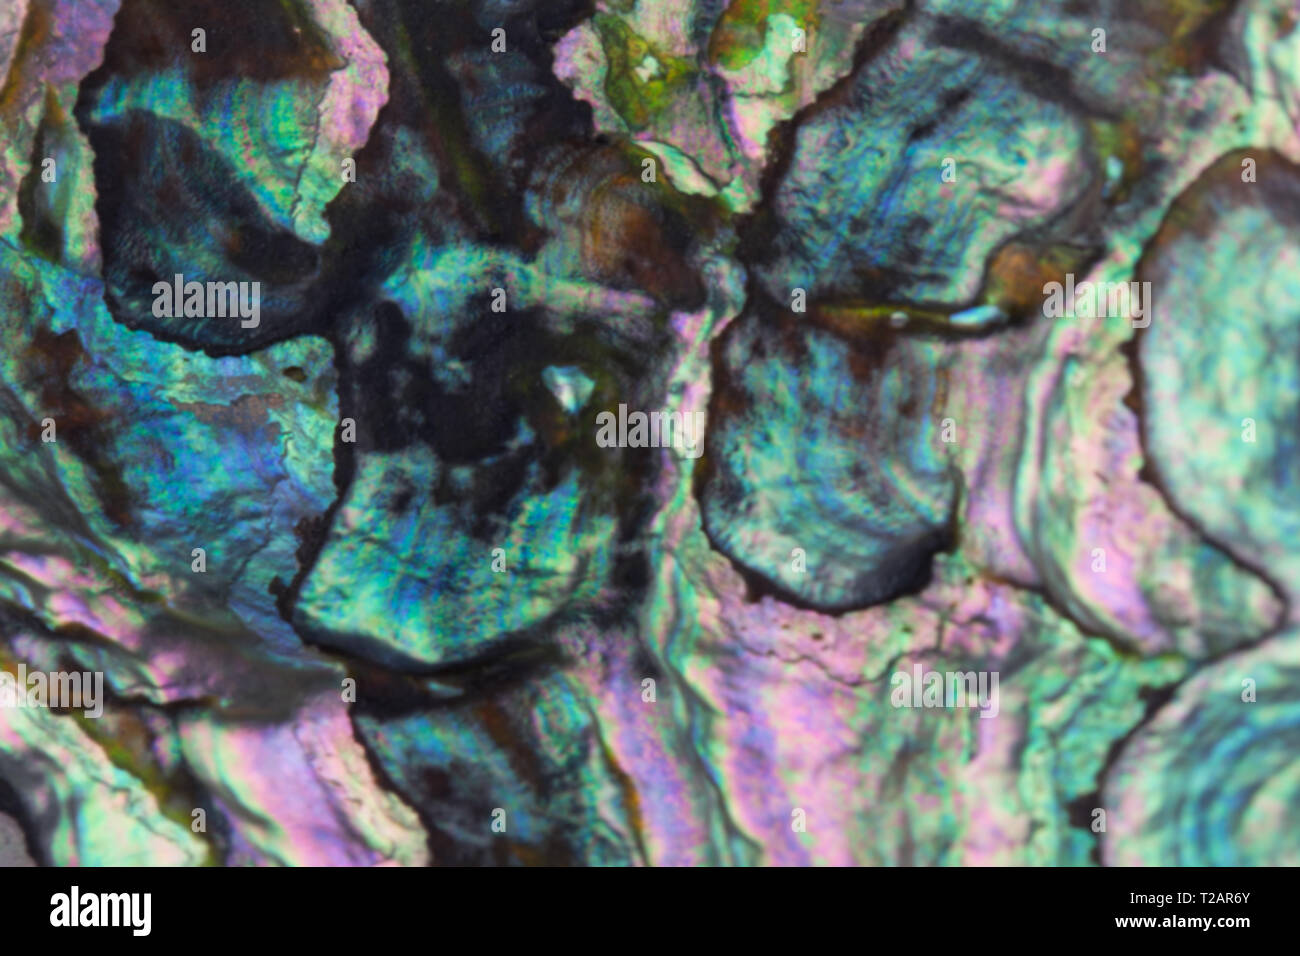 Résumé arrière-plan flou avec perle de nacre, avec texture nacrée lilas, mauve, bleu et des tons turquoise - paua coquillages Banque D'Images